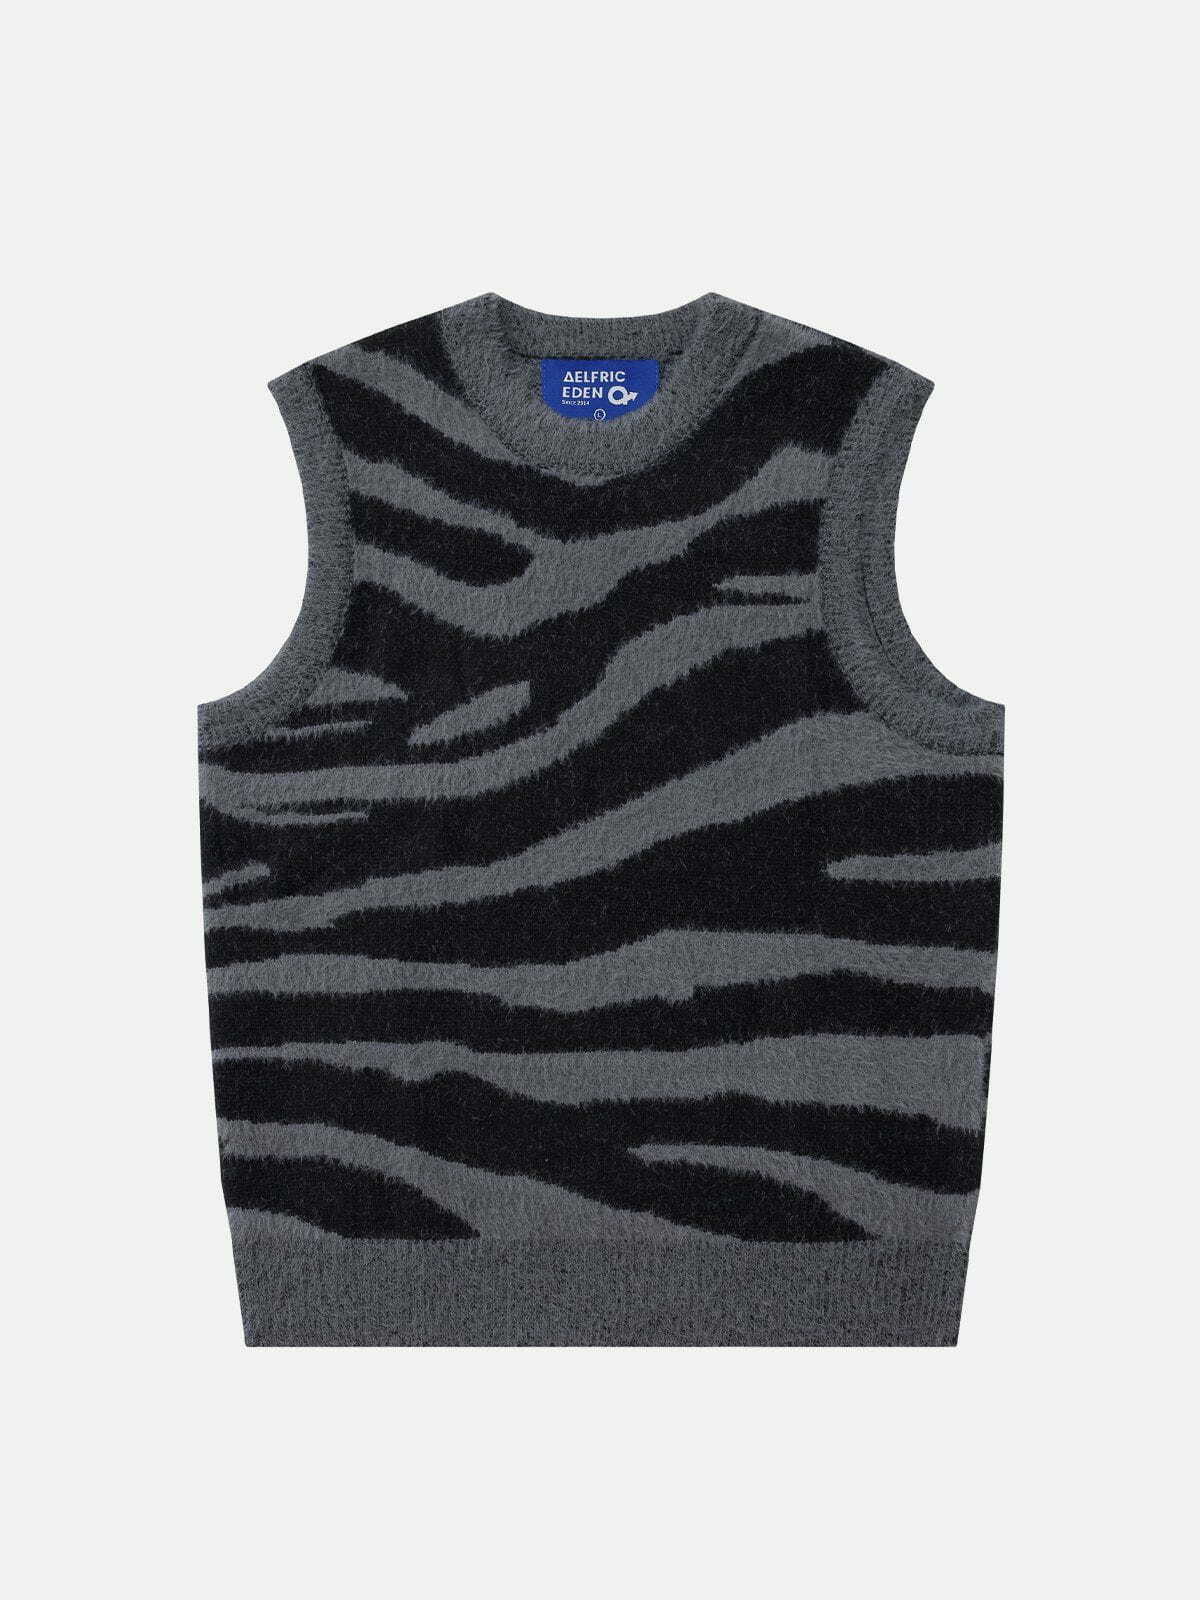 chic zebra pattern vest youthful & trendy streetwear 2979